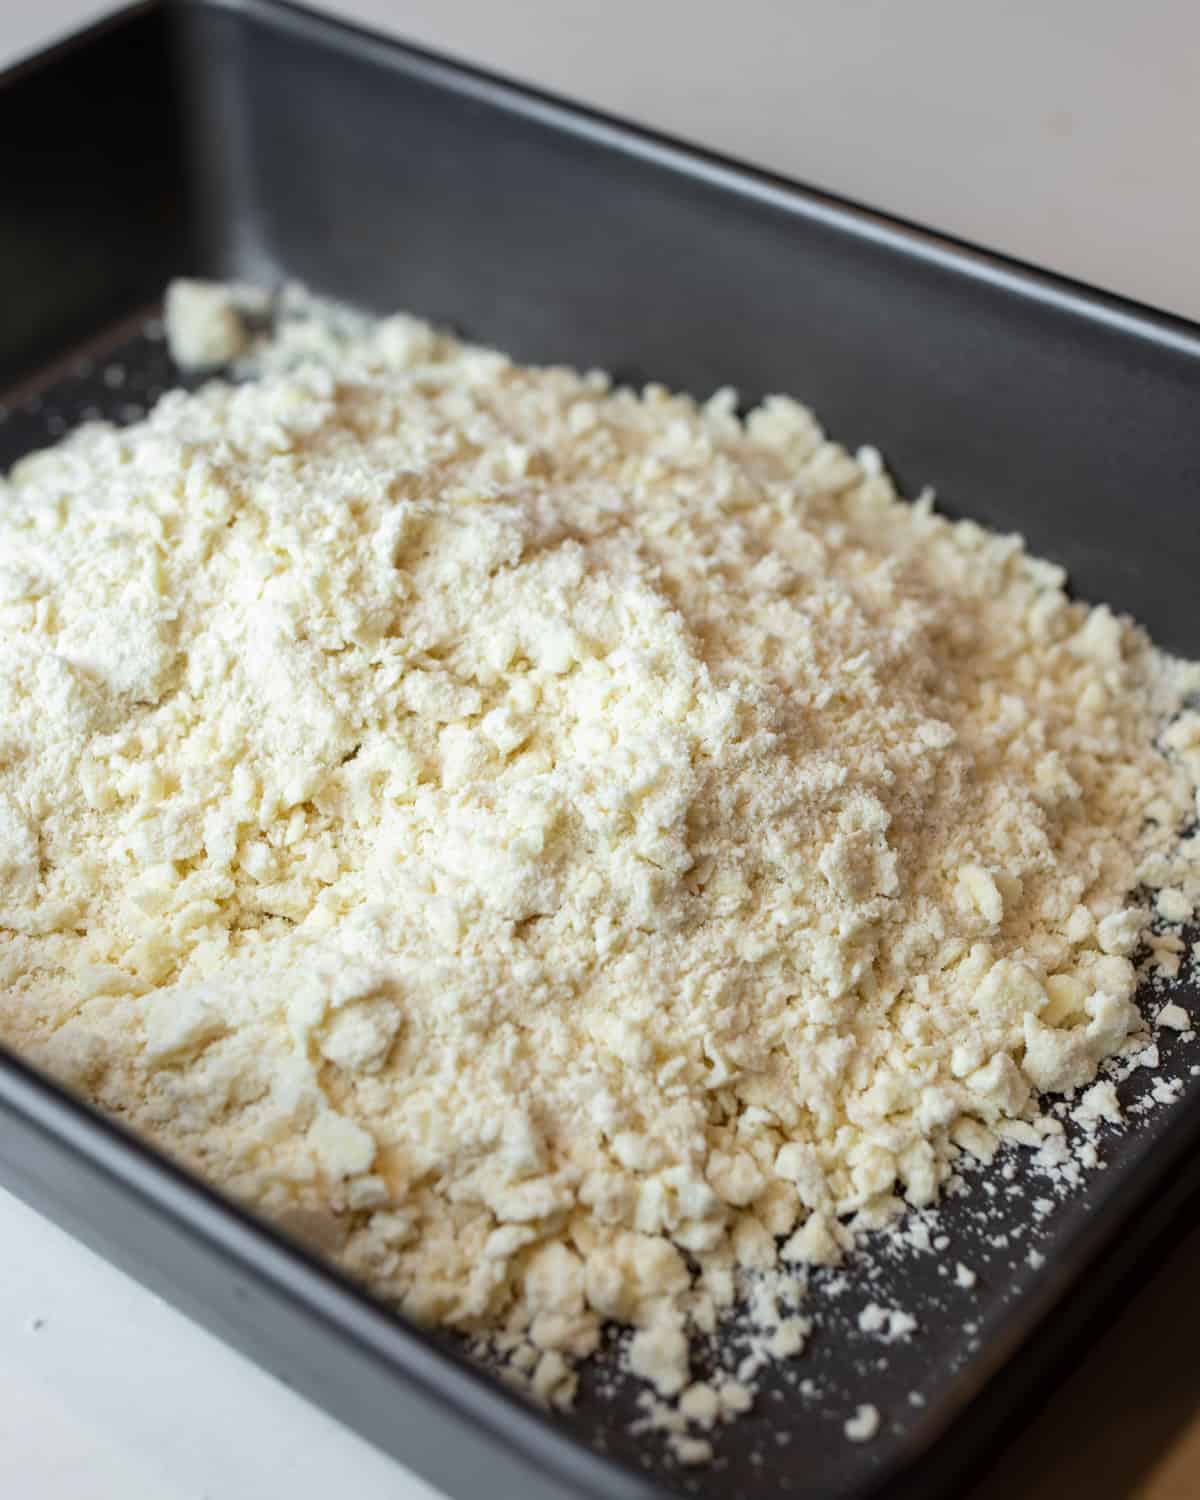 Shortbread dough in a baking pan.